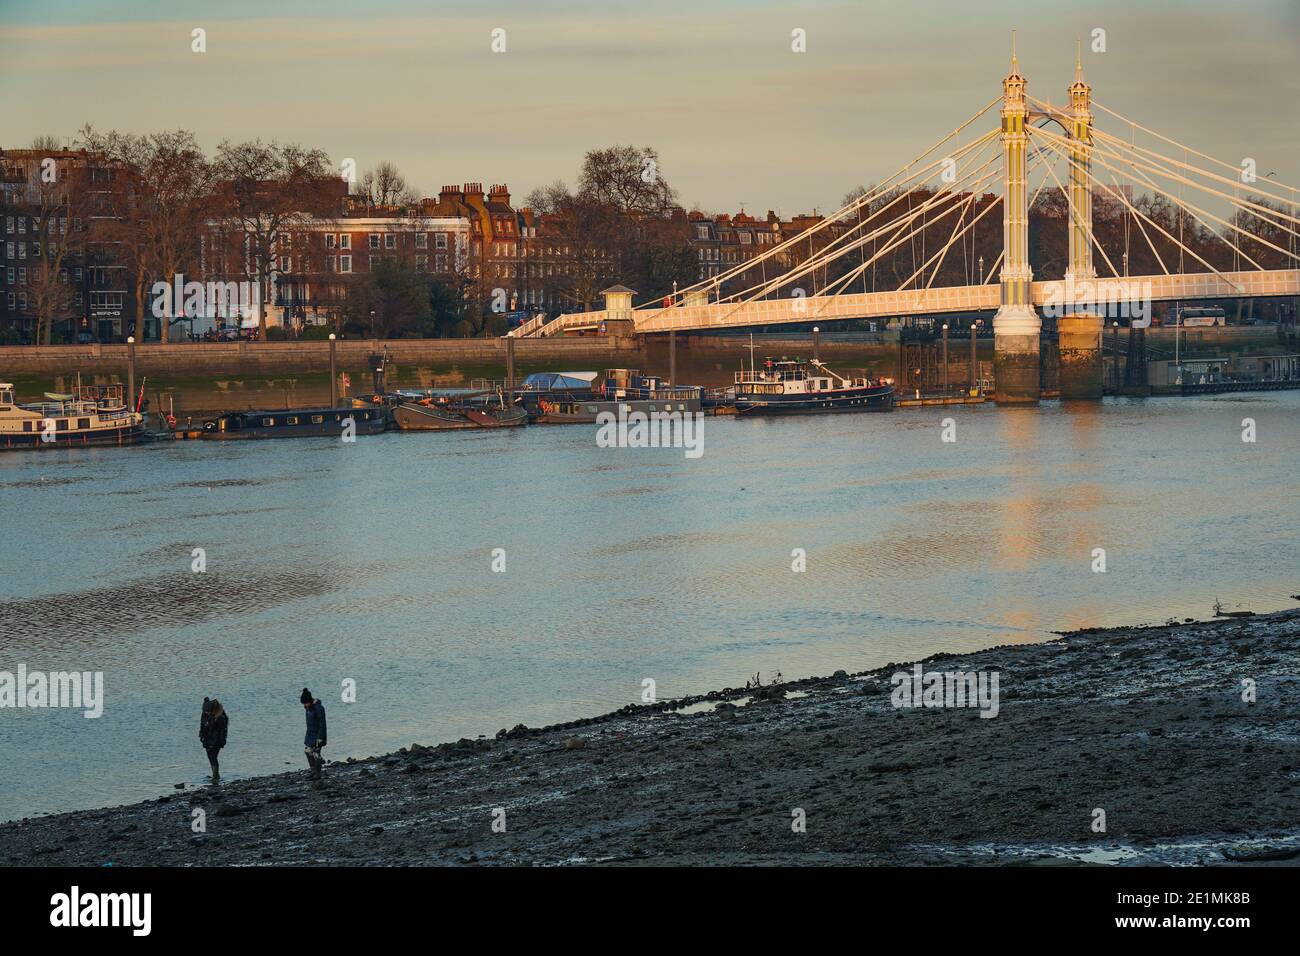 Deux mudlarks à la recherche de trésors sur les rives de la Tamise près du pont Albert, Londres. Date de la photo : jeudi 7 janvier 2021. Photo: Roger Garfield/ Banque D'Images